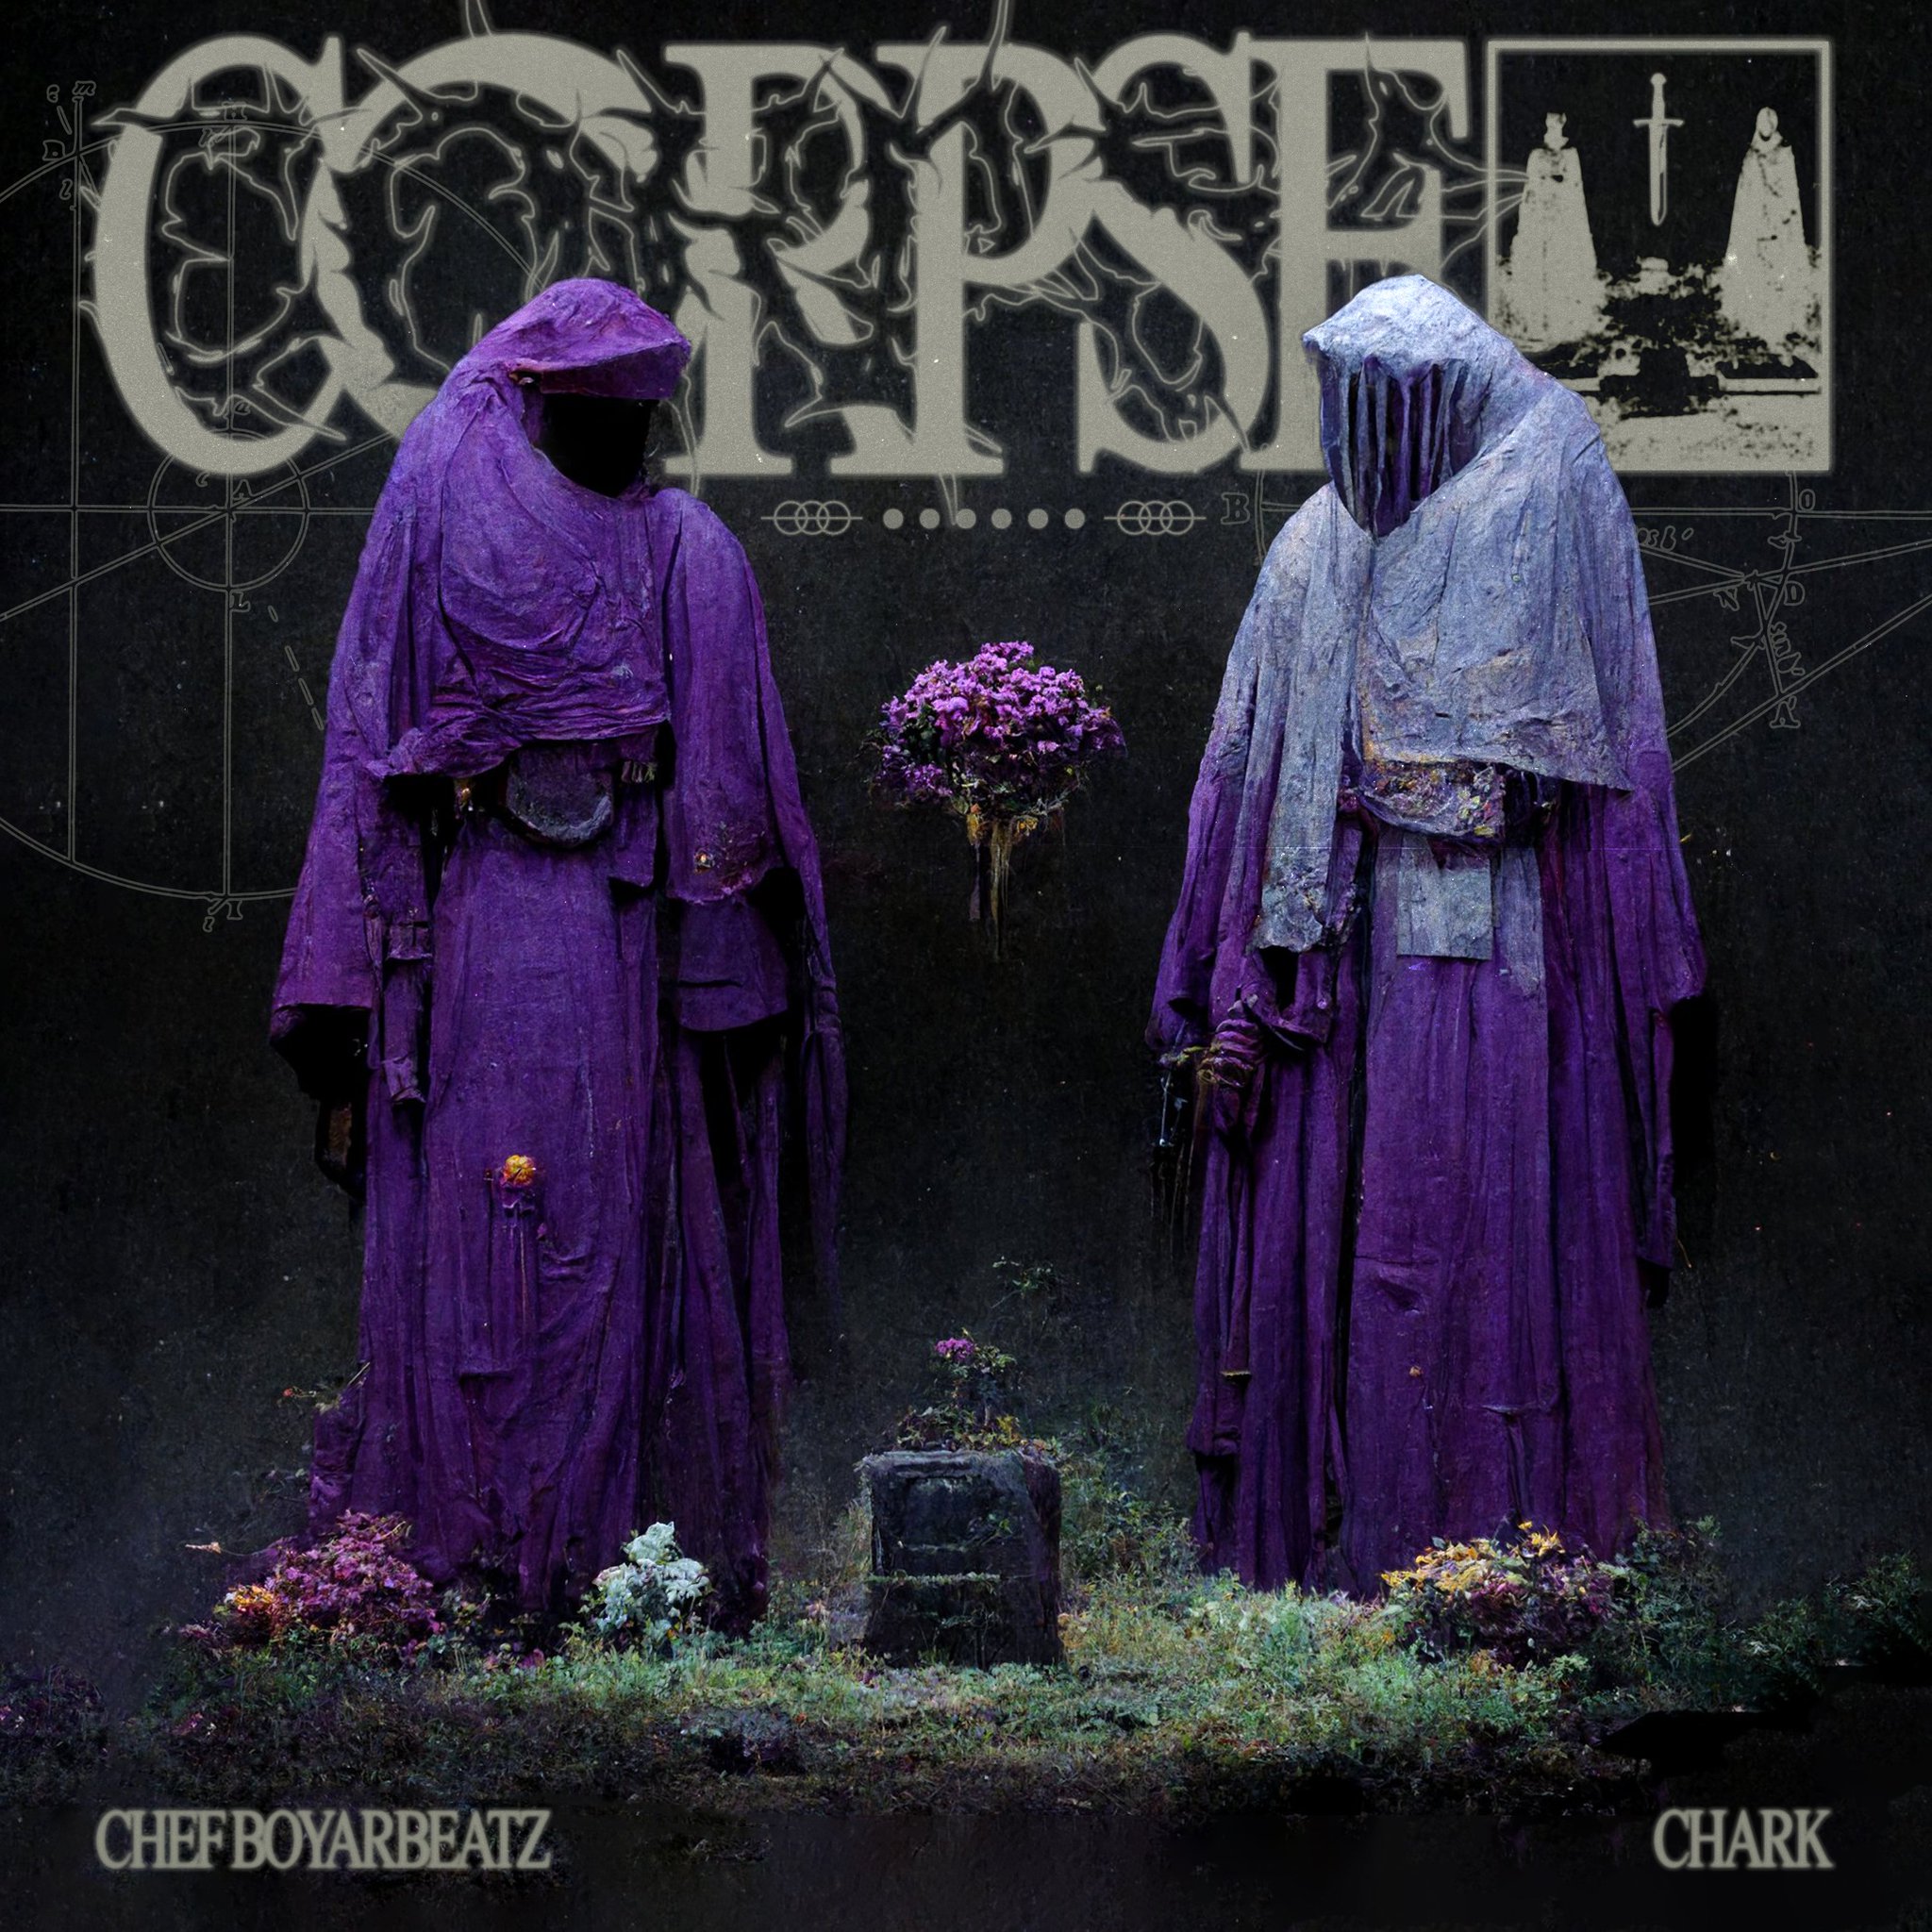 Chef Boyarbeatz & Chark - Corpse